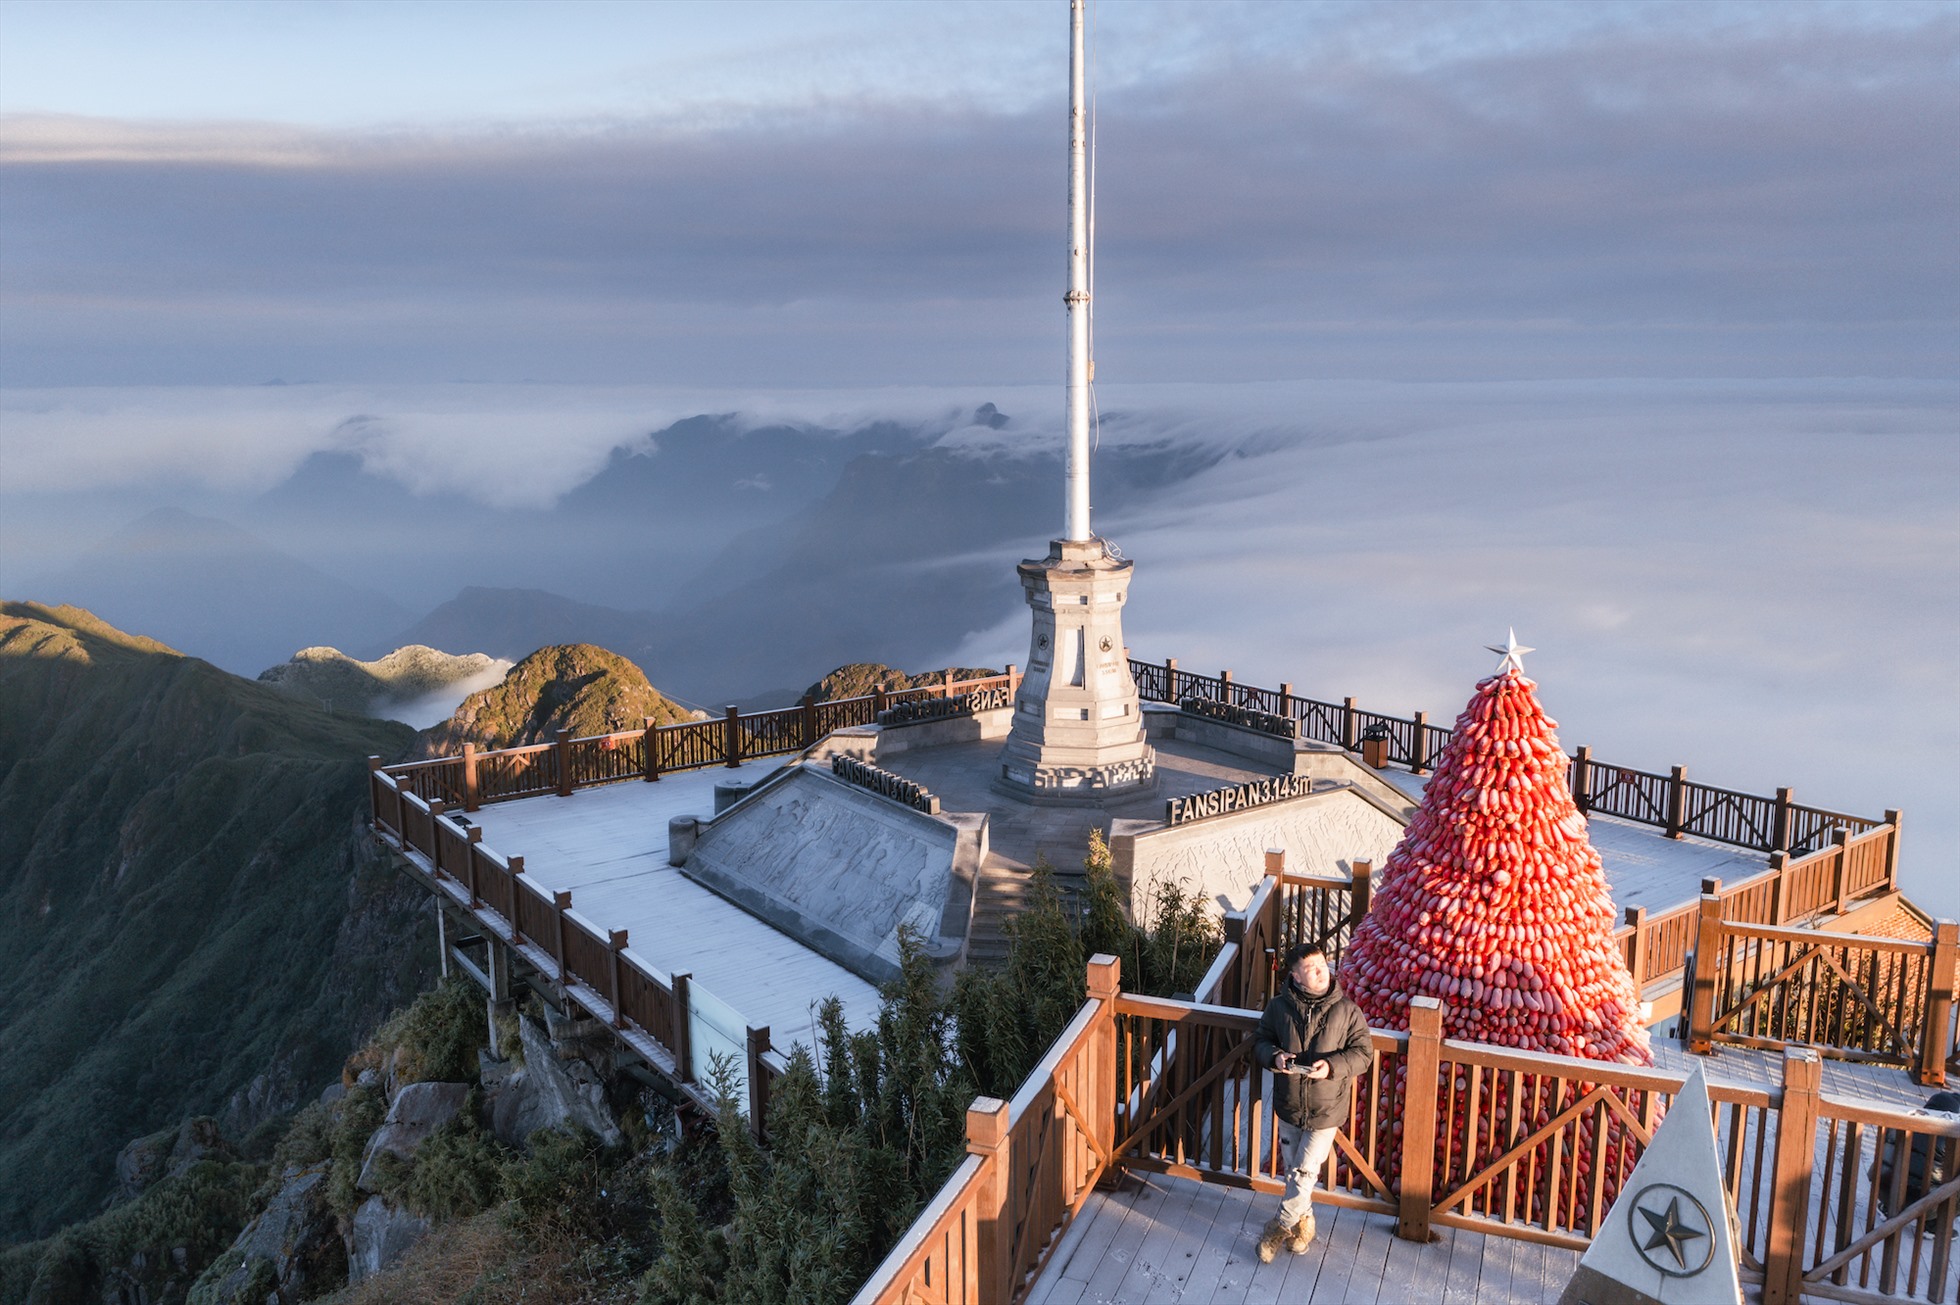 Theo ghi nhận từ nhân viên khu du lịch Sun World Fansipan Legend, đỉnh Fansipan đã xuất hiện băng giá từ 7h sáng ngày 17.12, nhiệt độ đo được là -2 đến -1 độ C. Từ 16h ngày 17.12 đến nay, băng vẫn đang tiếp tục kết dày từ độ cao 2.800 m, phủ trắng núi rừng Hoàng Liên Sơn.